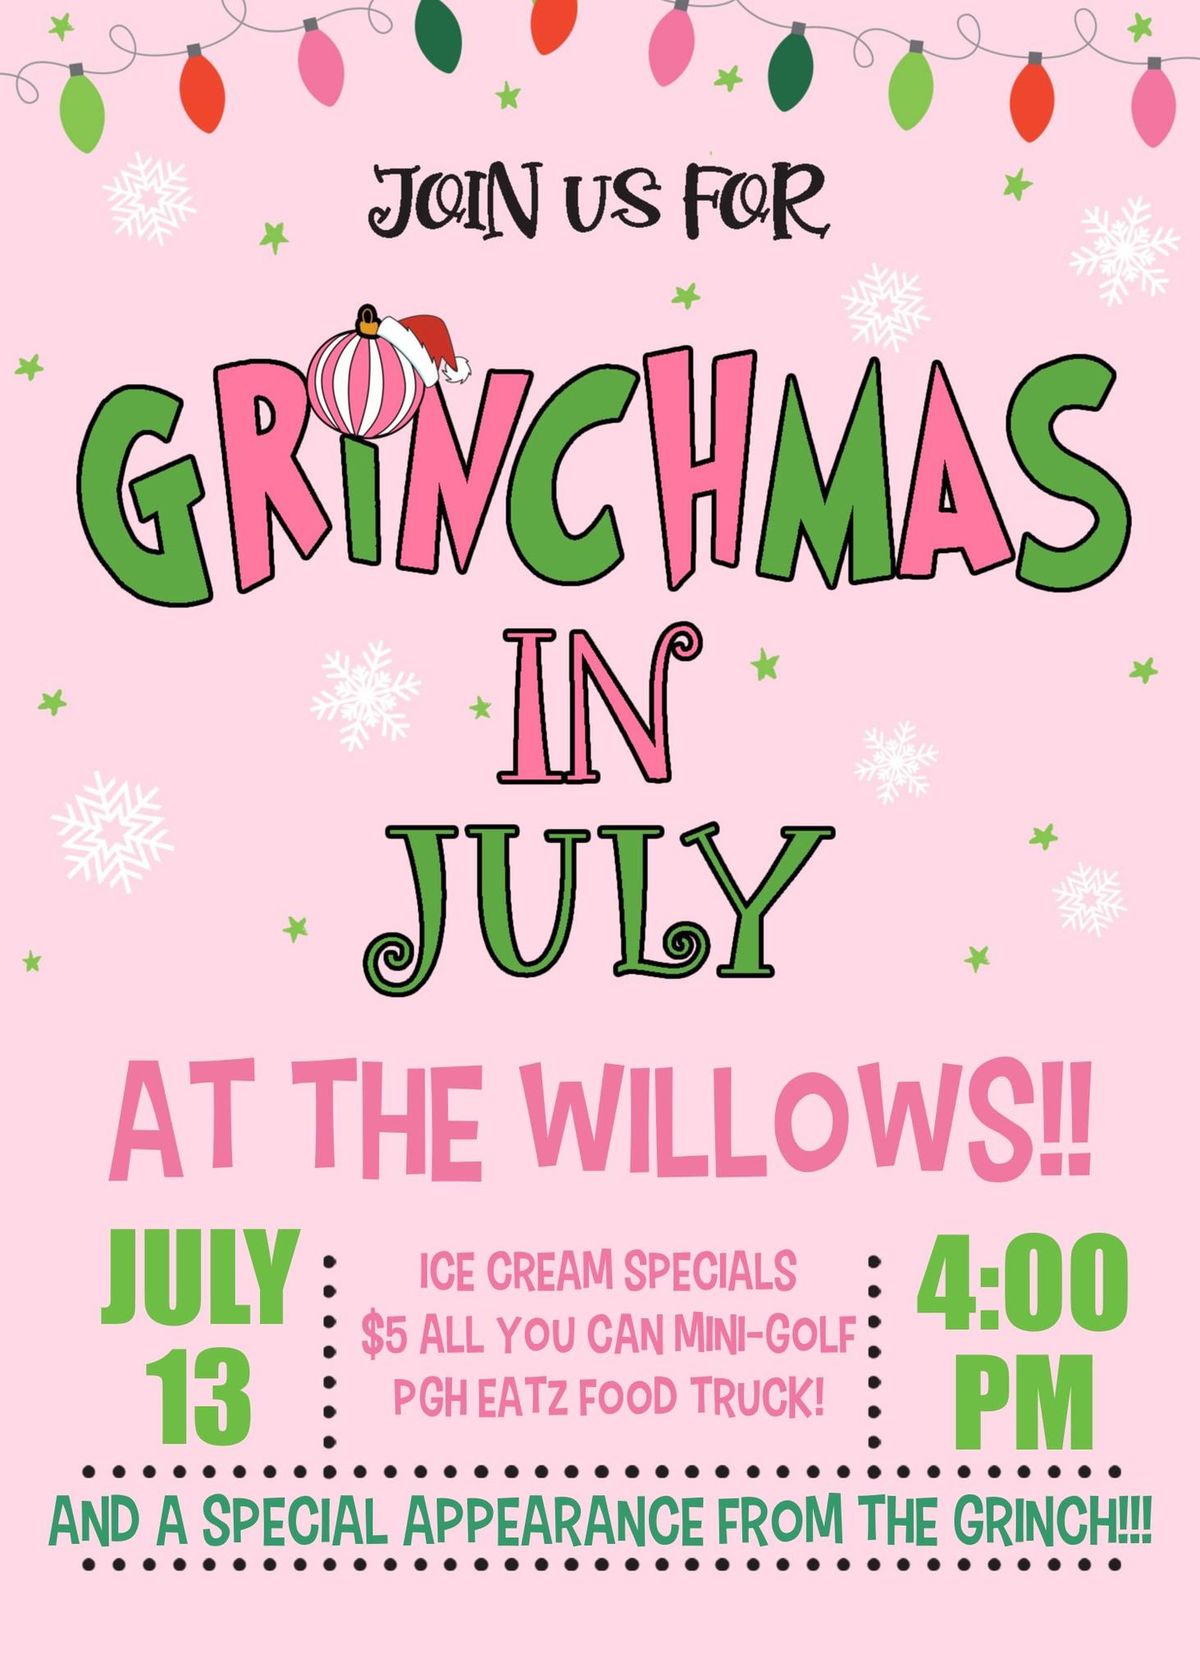 Grinchmas in July!! 